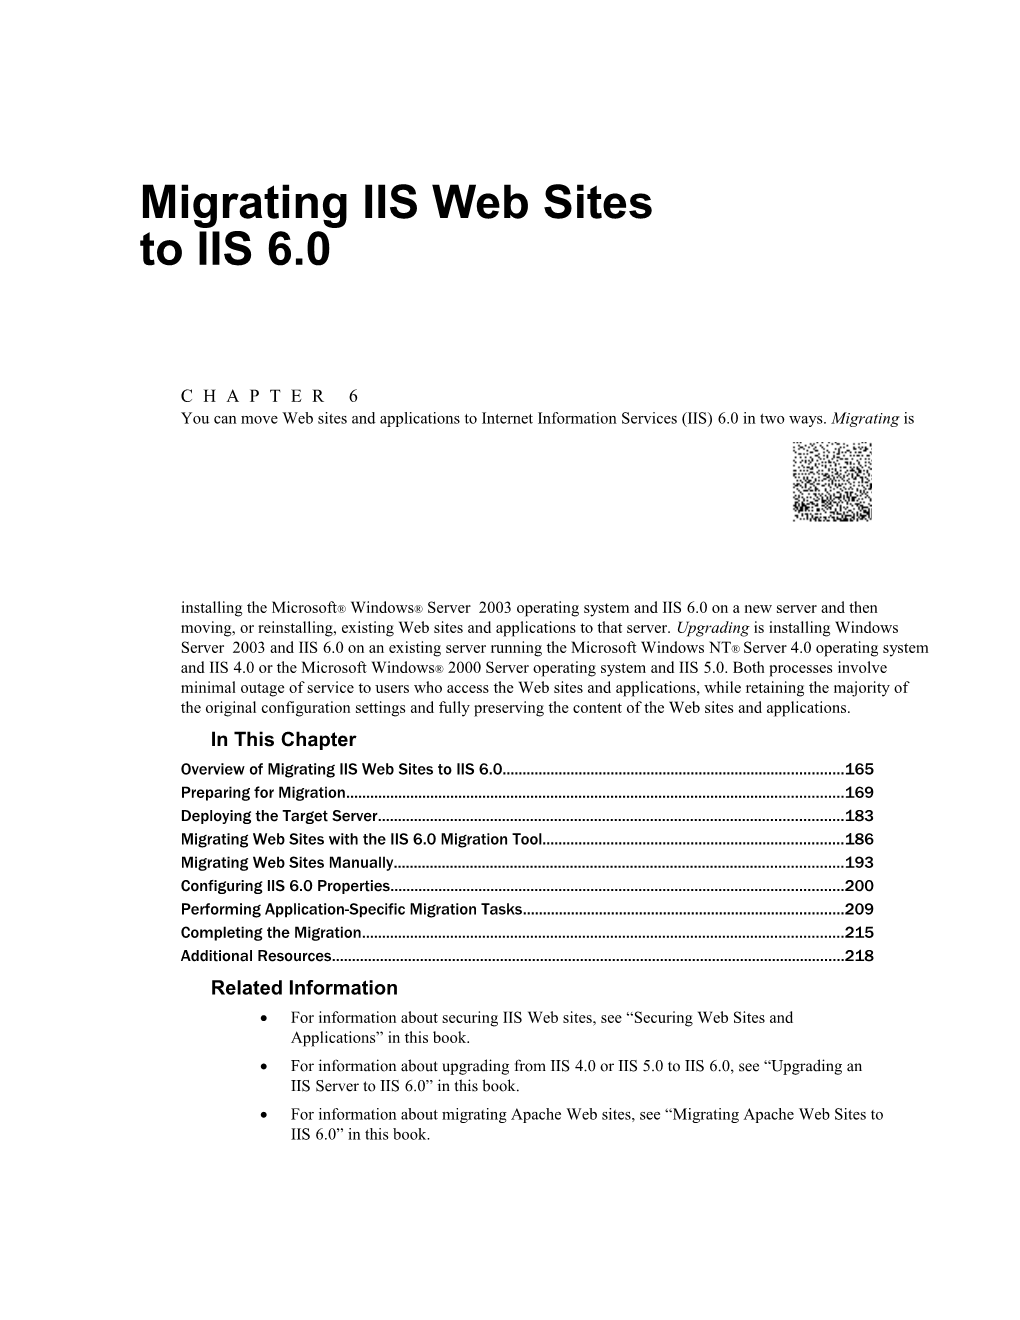 09 CHAPTER 6 Migrating IIS Web Sites to IIS 6.0